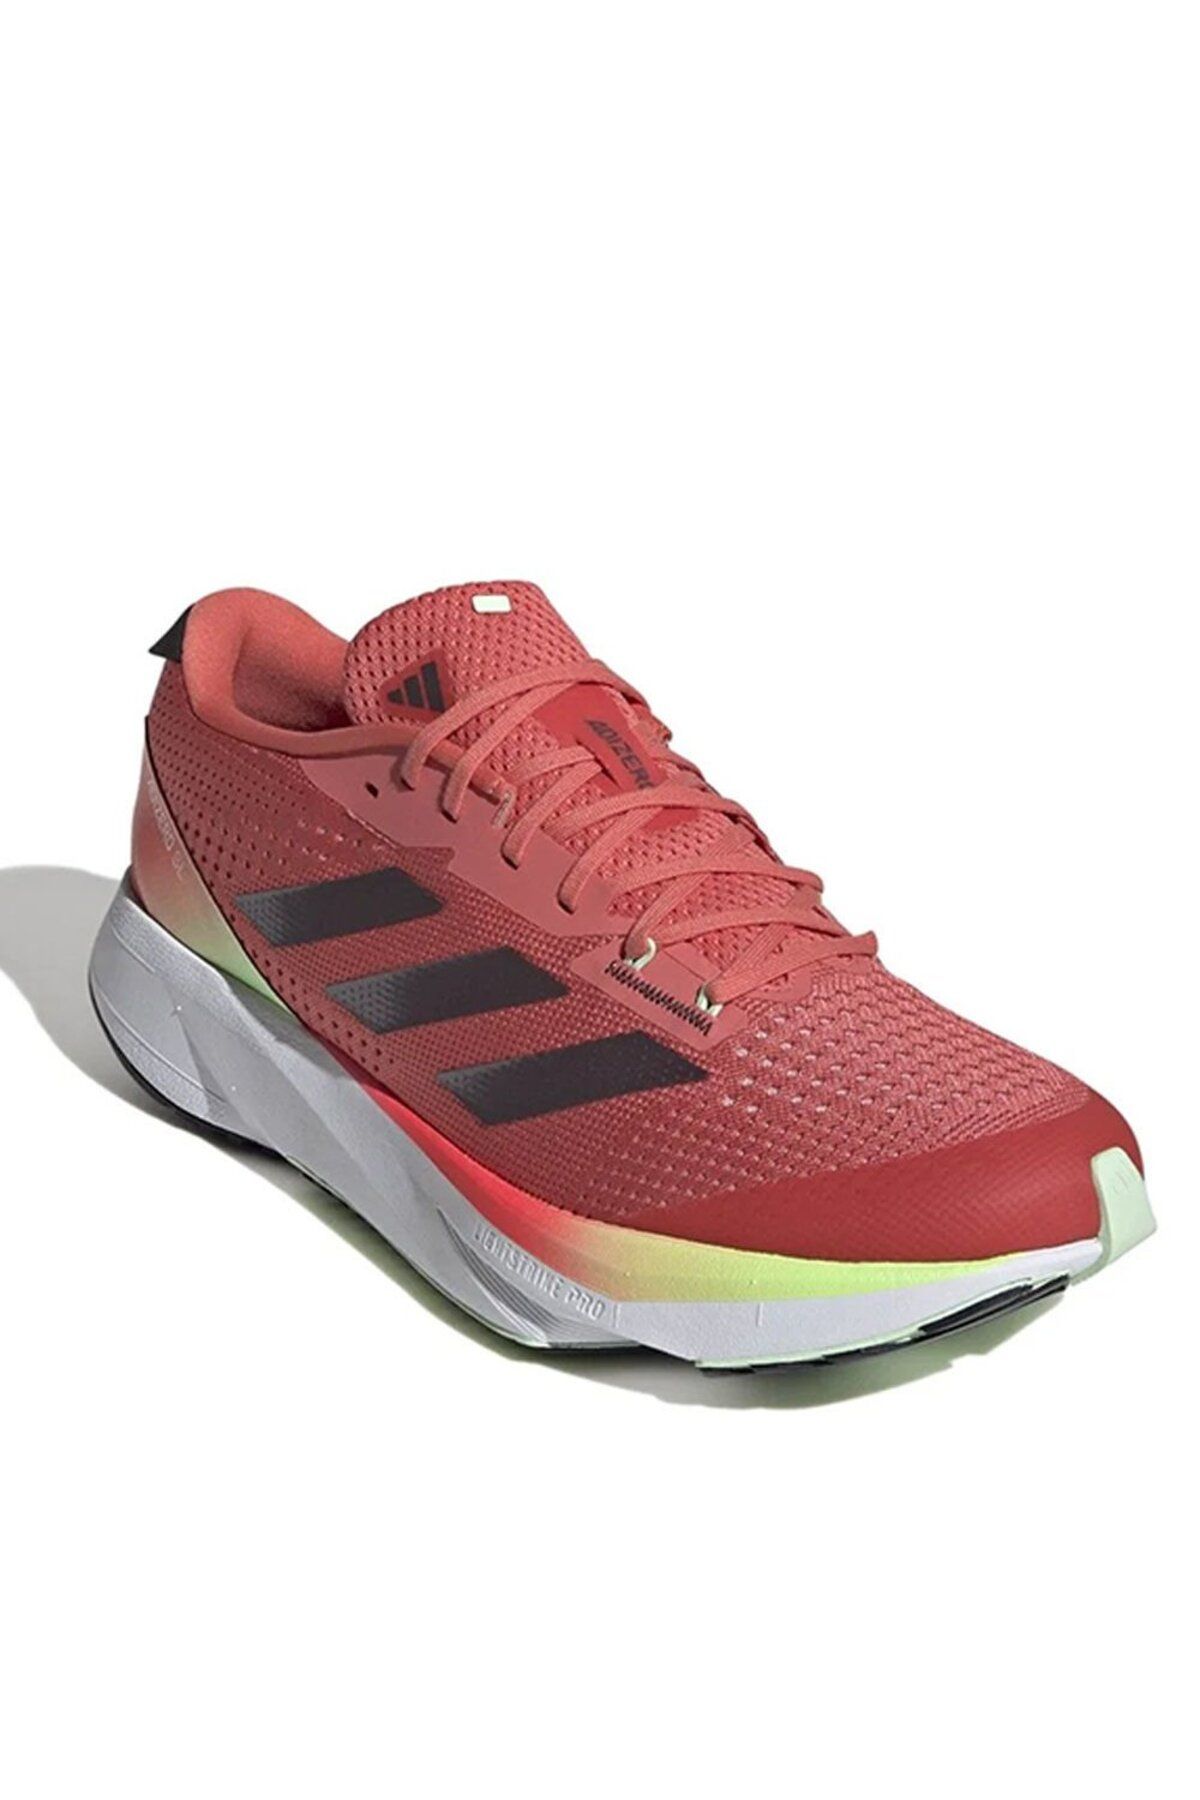 adidas Adizero Sl Kadın Koşu Ayakkabısı